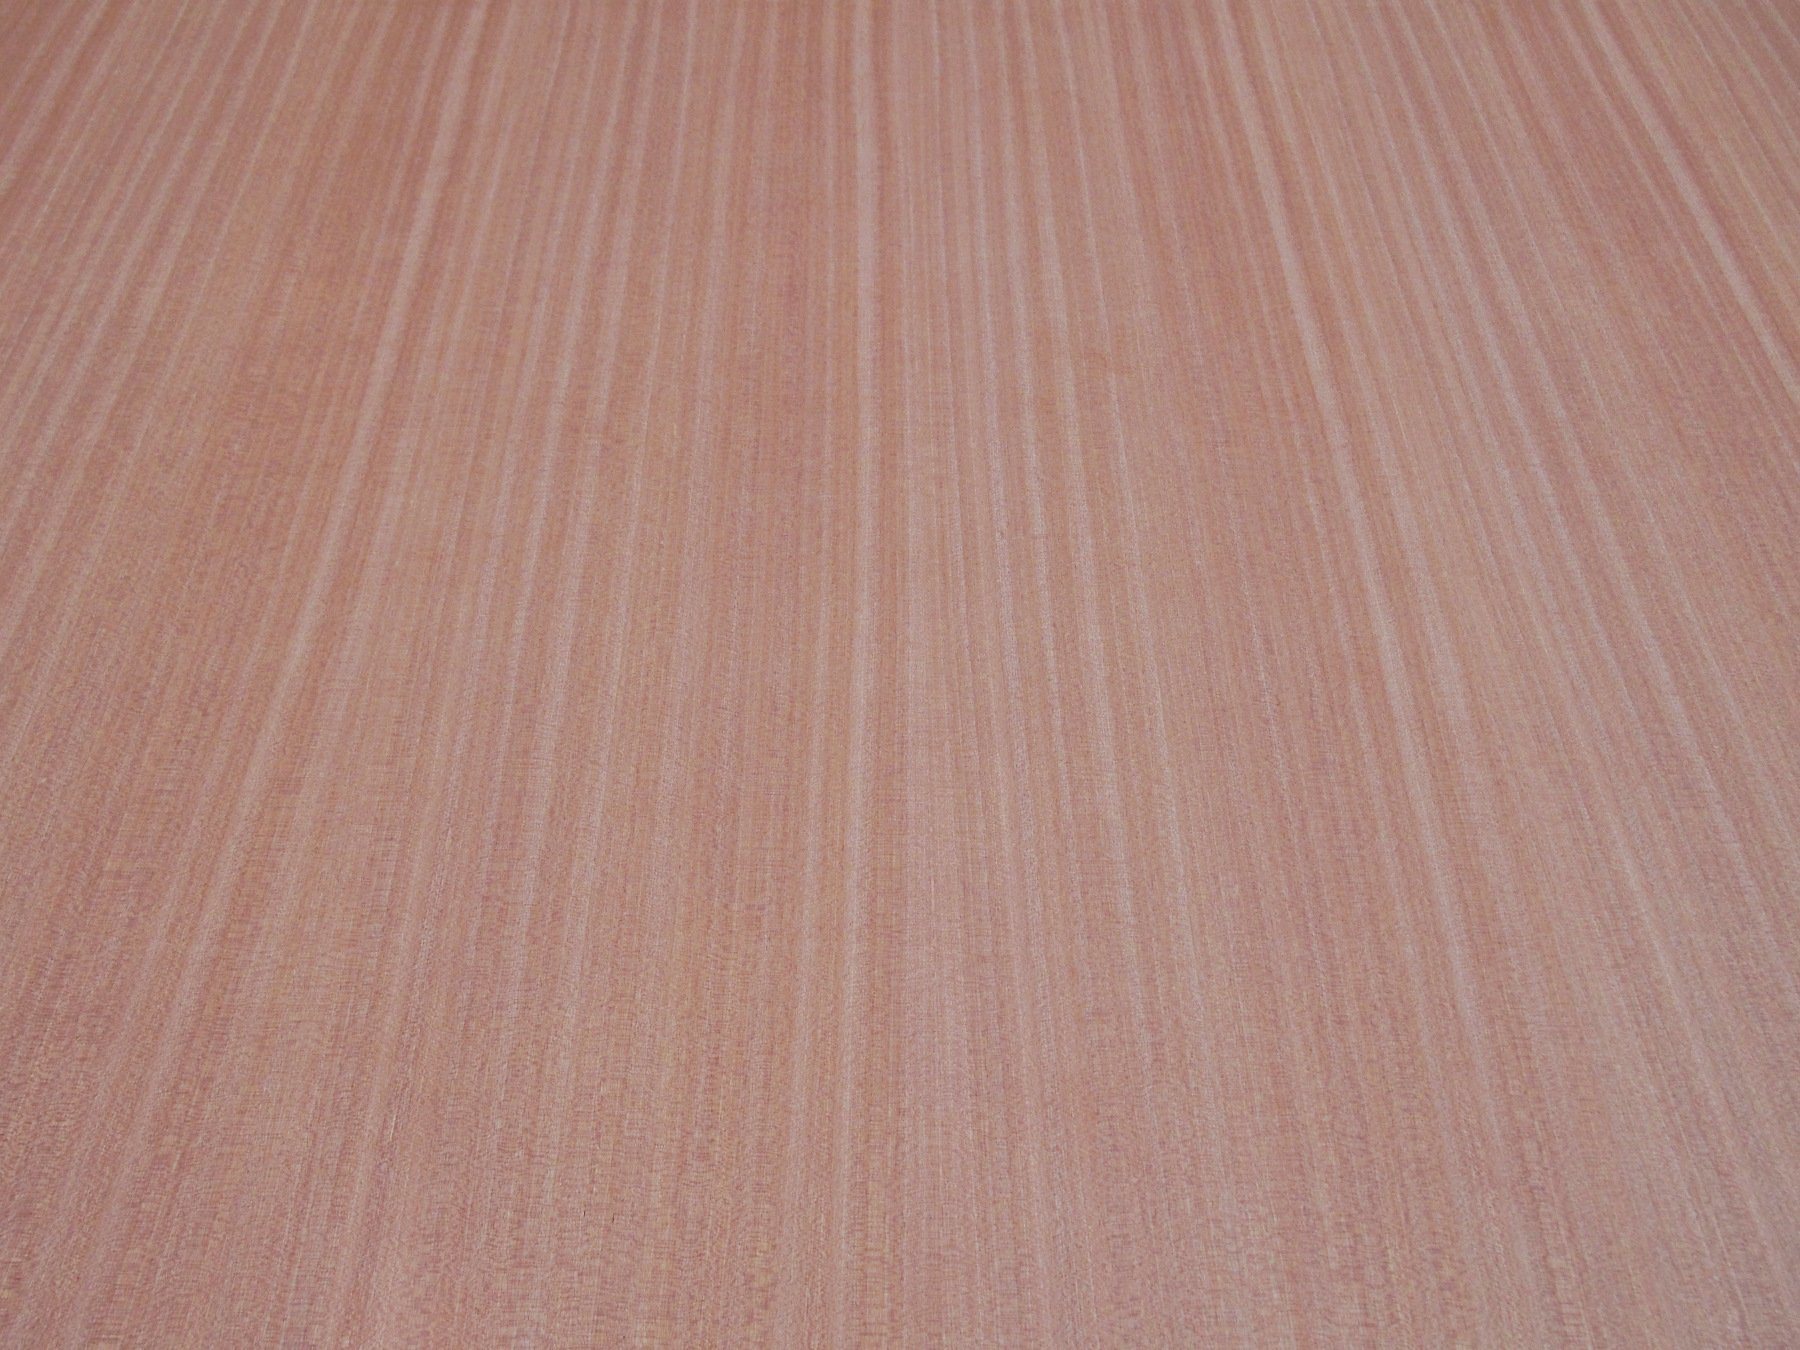 Okoume Bintangor Pencil Cedar Poplar Birch Pine Ash Oak Cherry 1220X2440 Veneer Plywood for Furniture Decoration